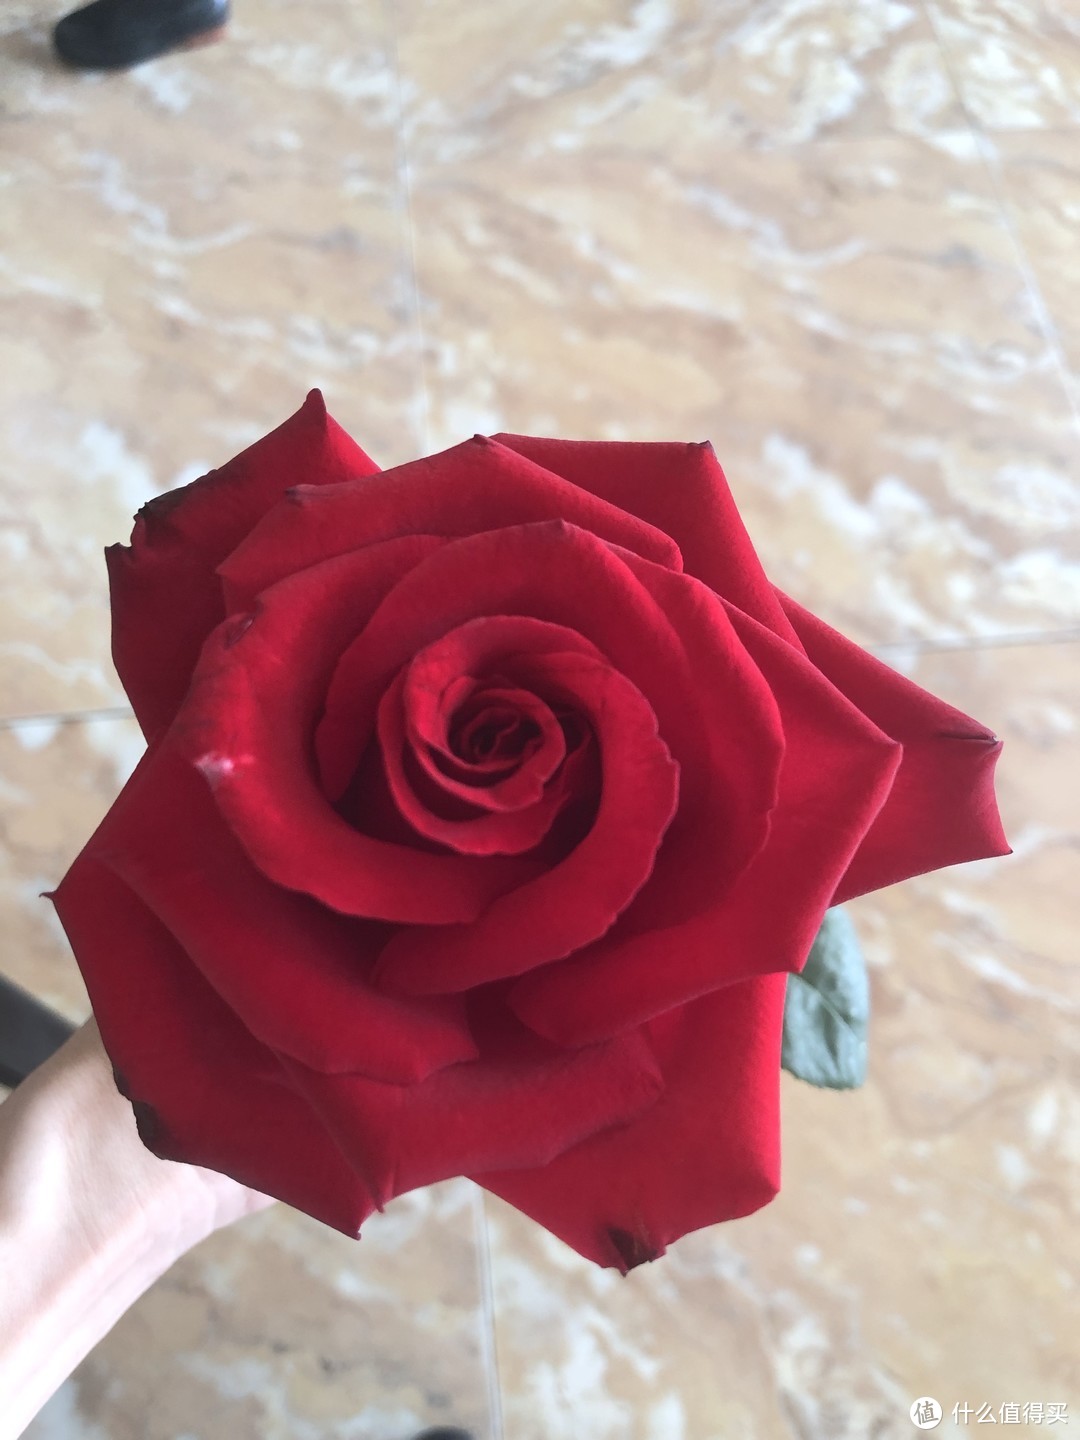 朋友送的一朵很漂亮的玫瑰